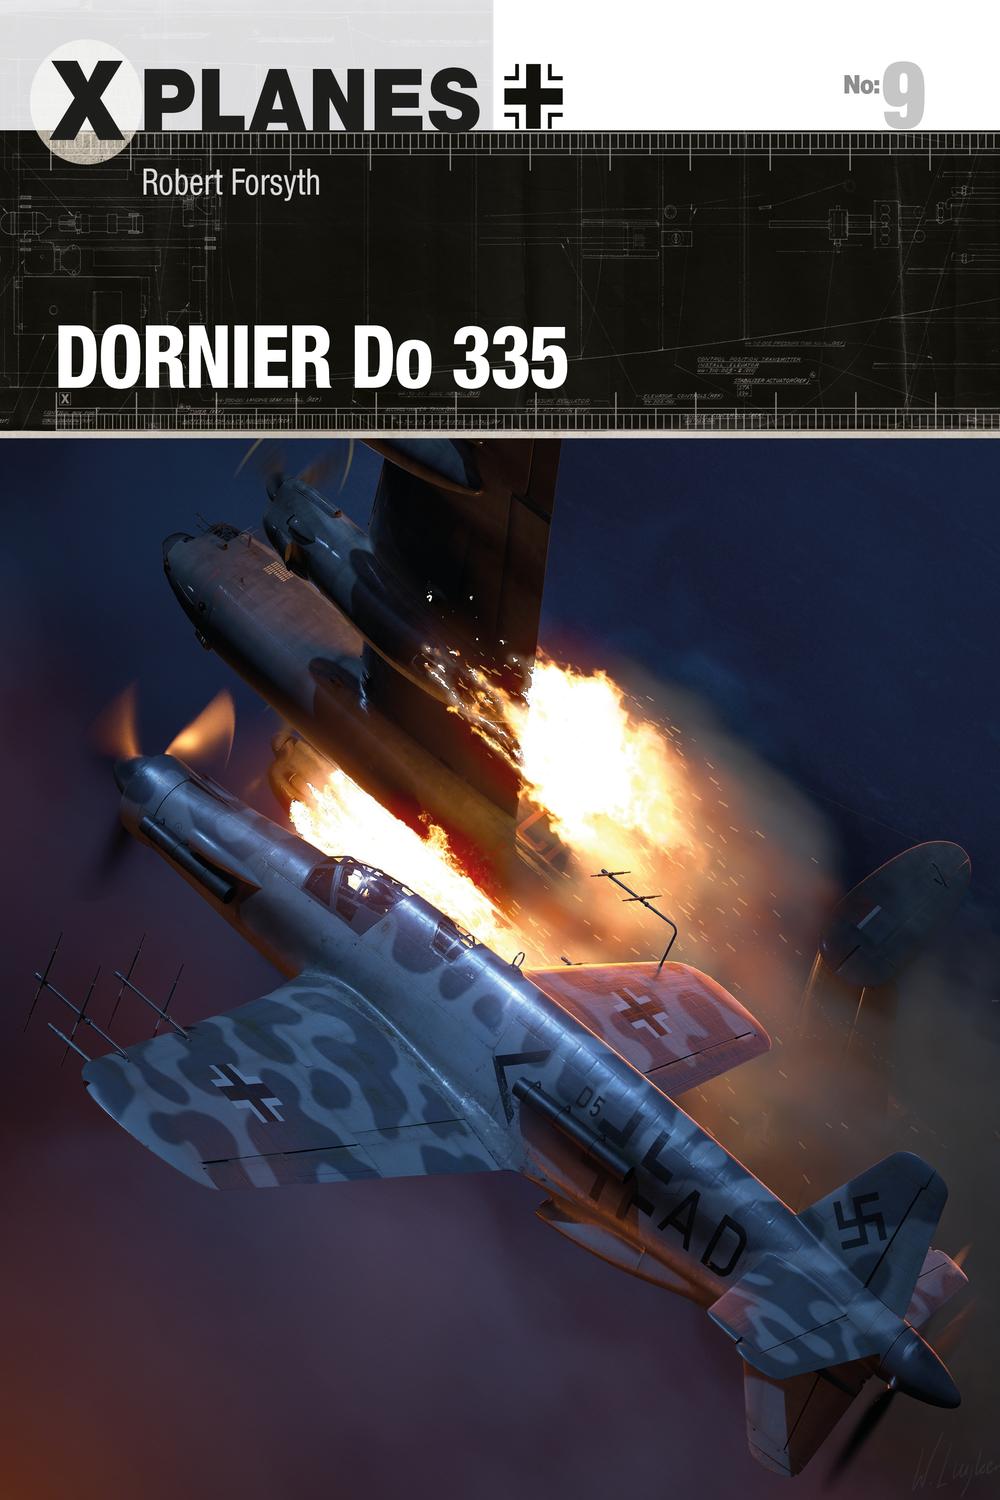 Dornier Do 335 - Robert Forsyth, Wiek Luijken, Adam Tooby, Simon Schatz